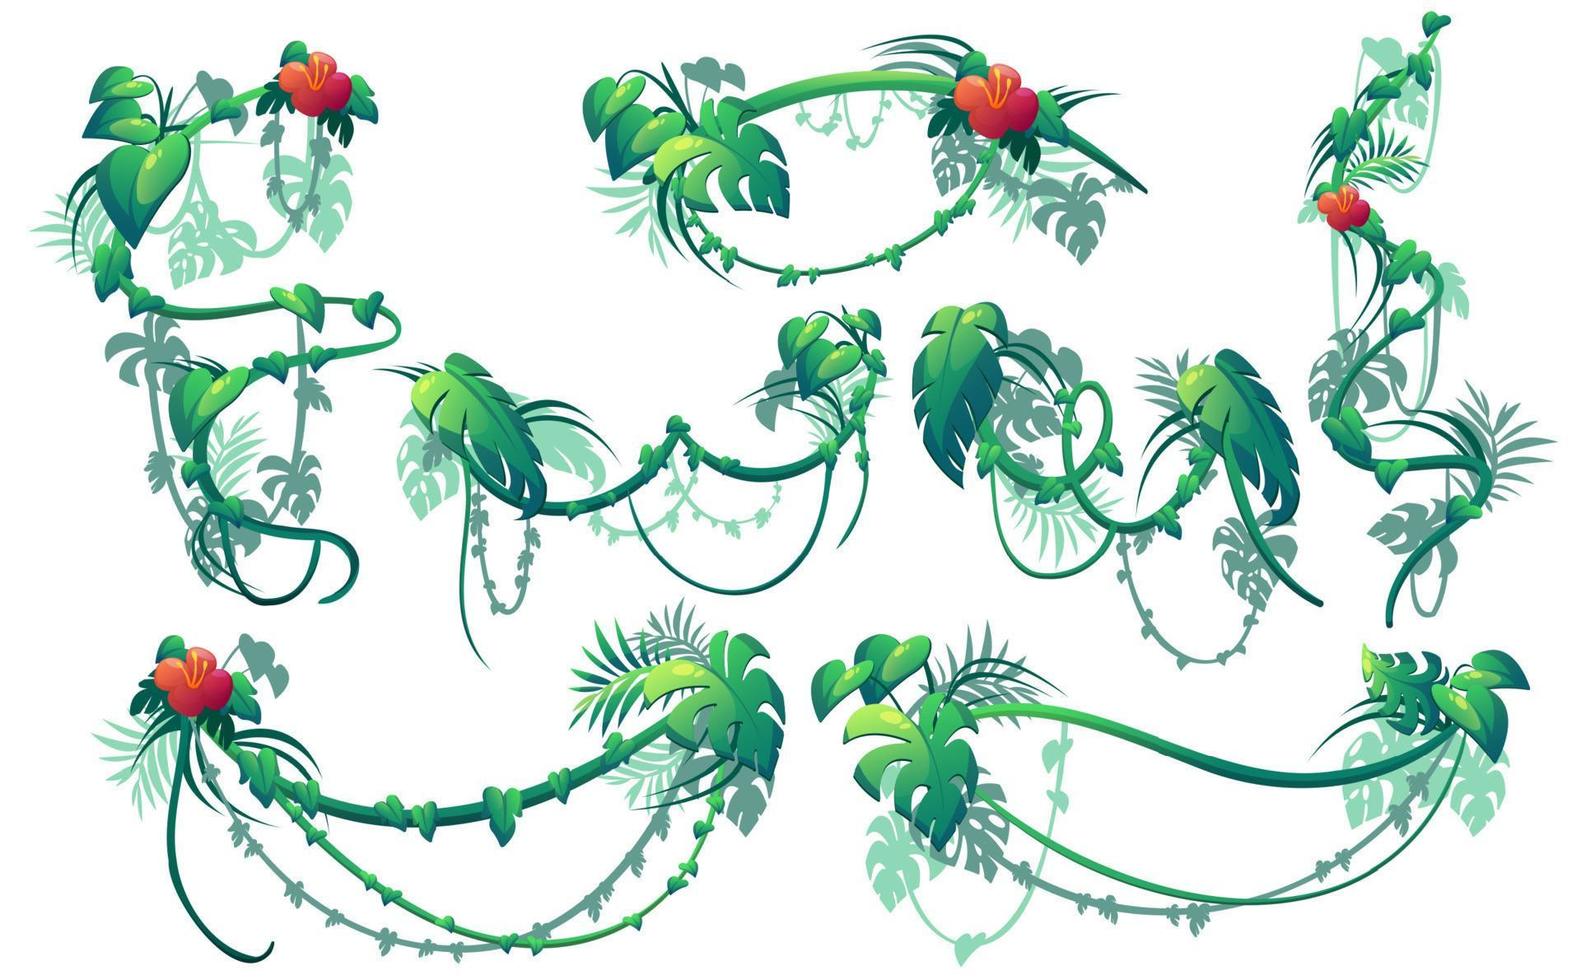 Dschungelkriechpflanzen, Lianen mit Blumen vektor